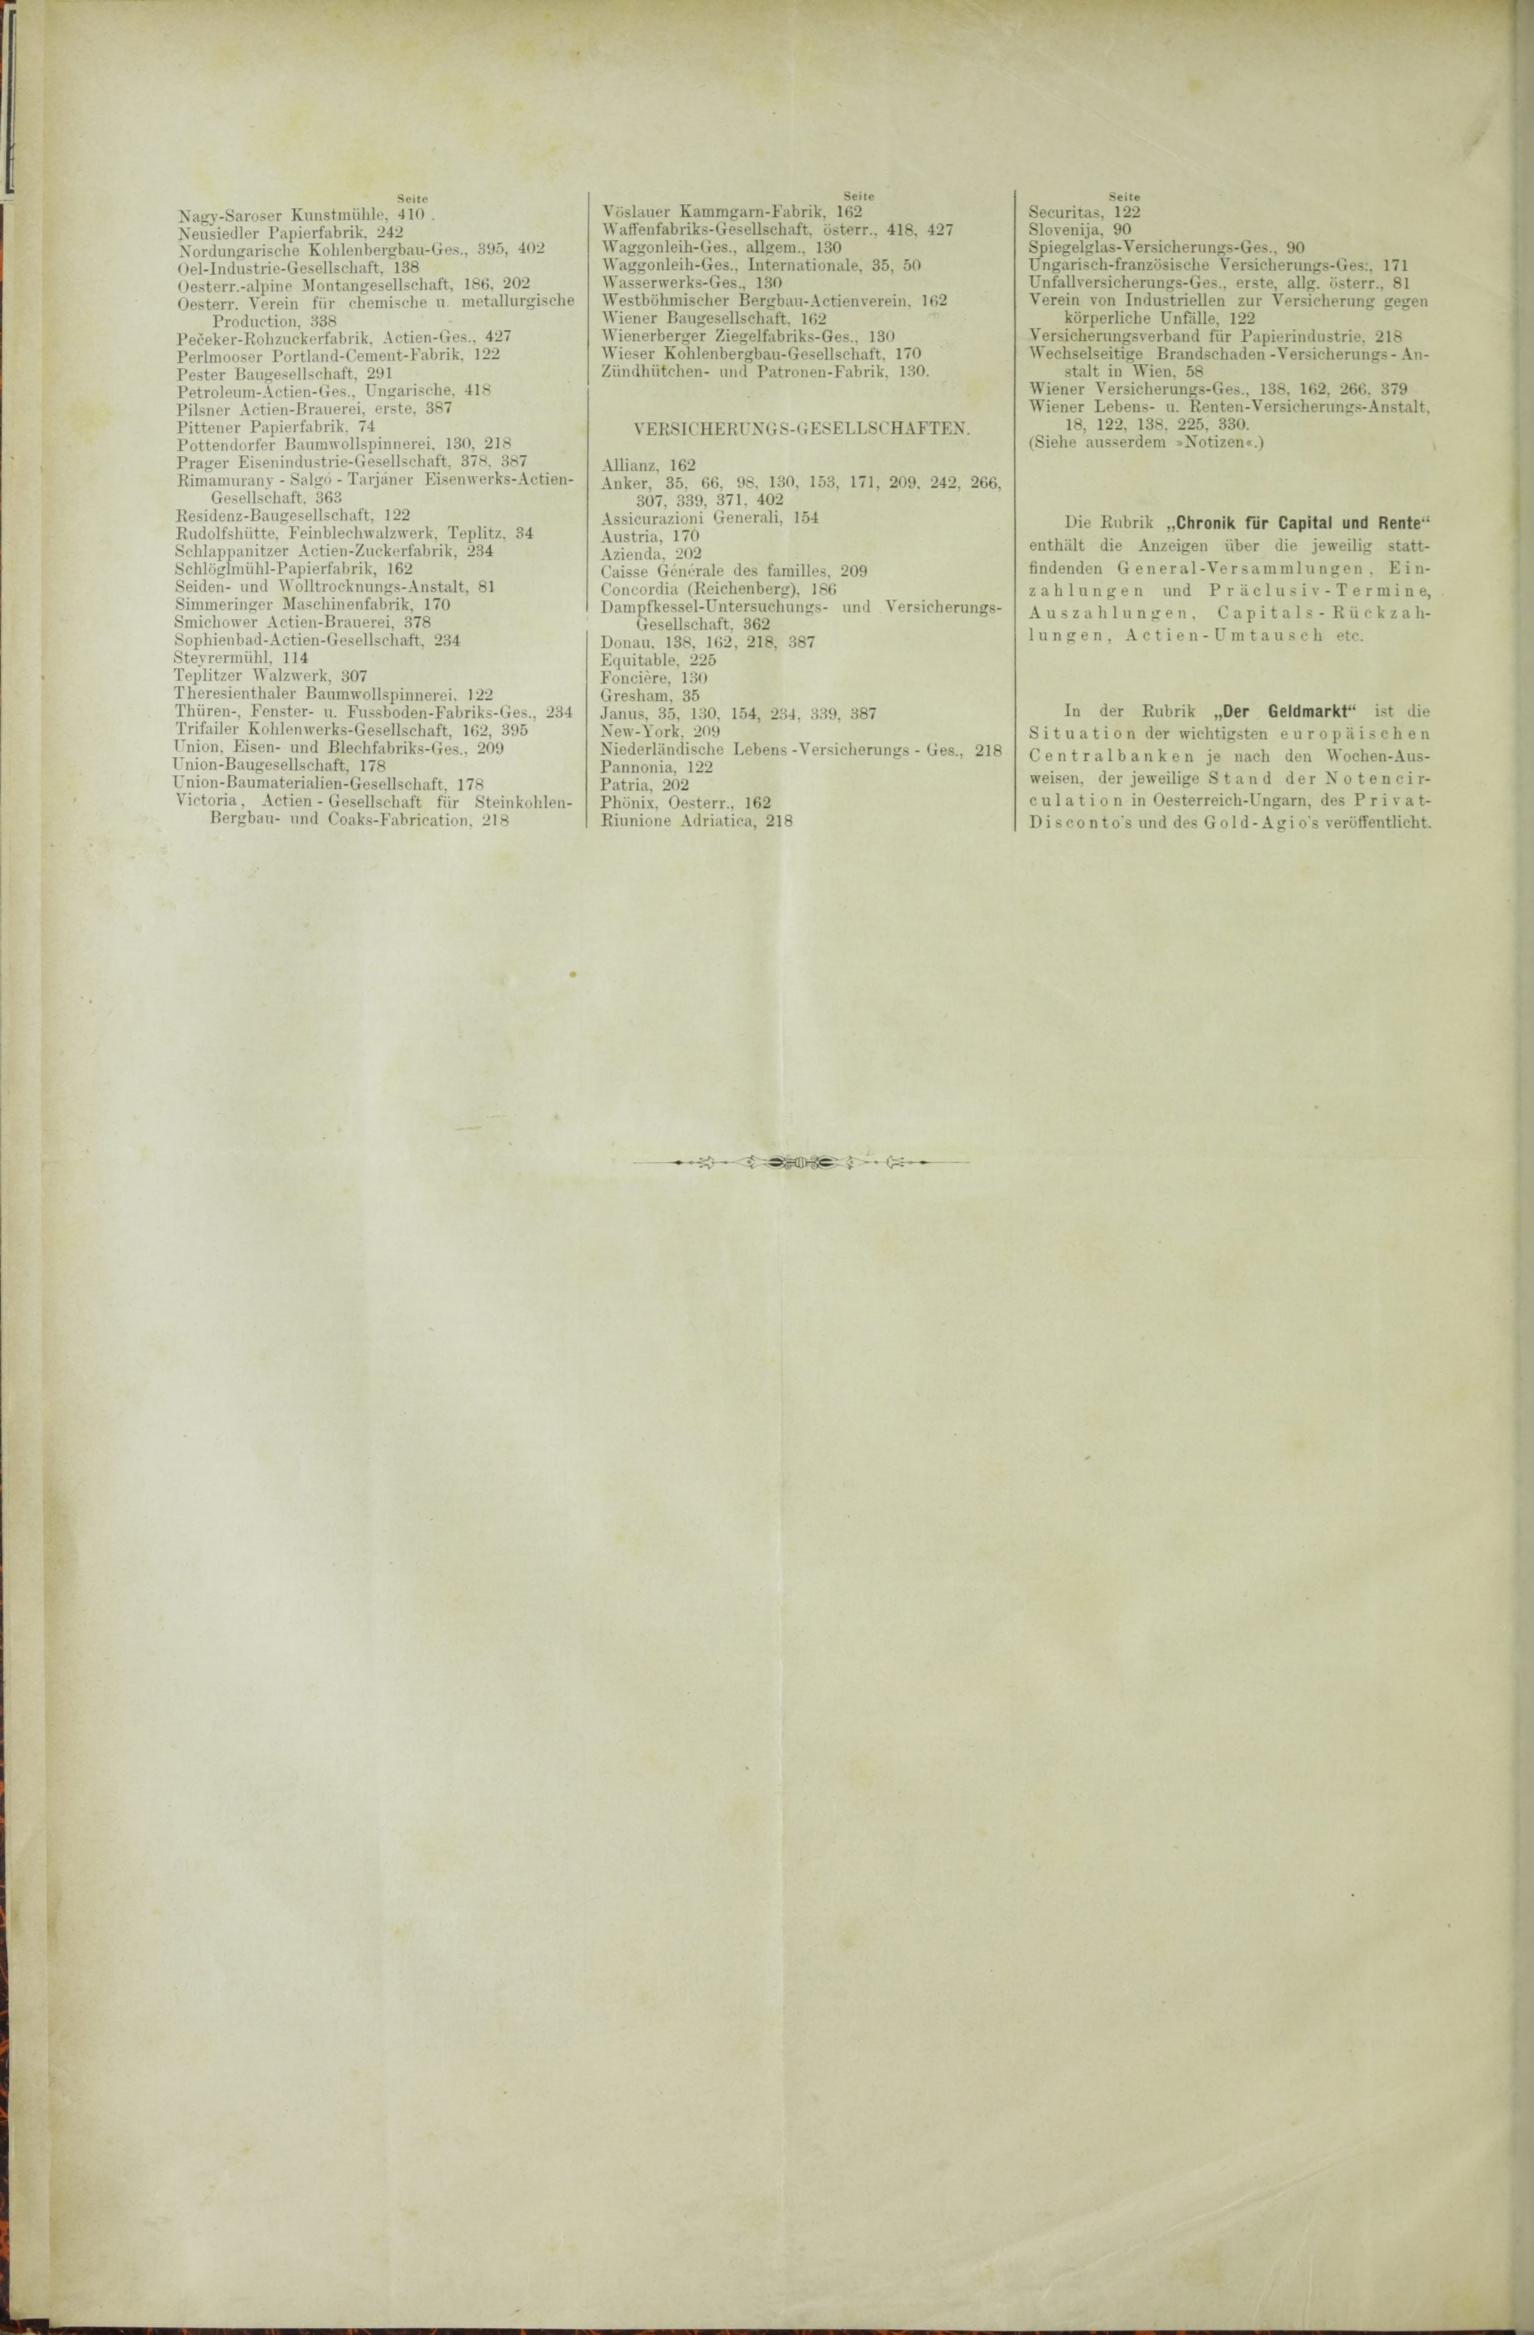 Der Tresor 19.11.1885 - Seite 12